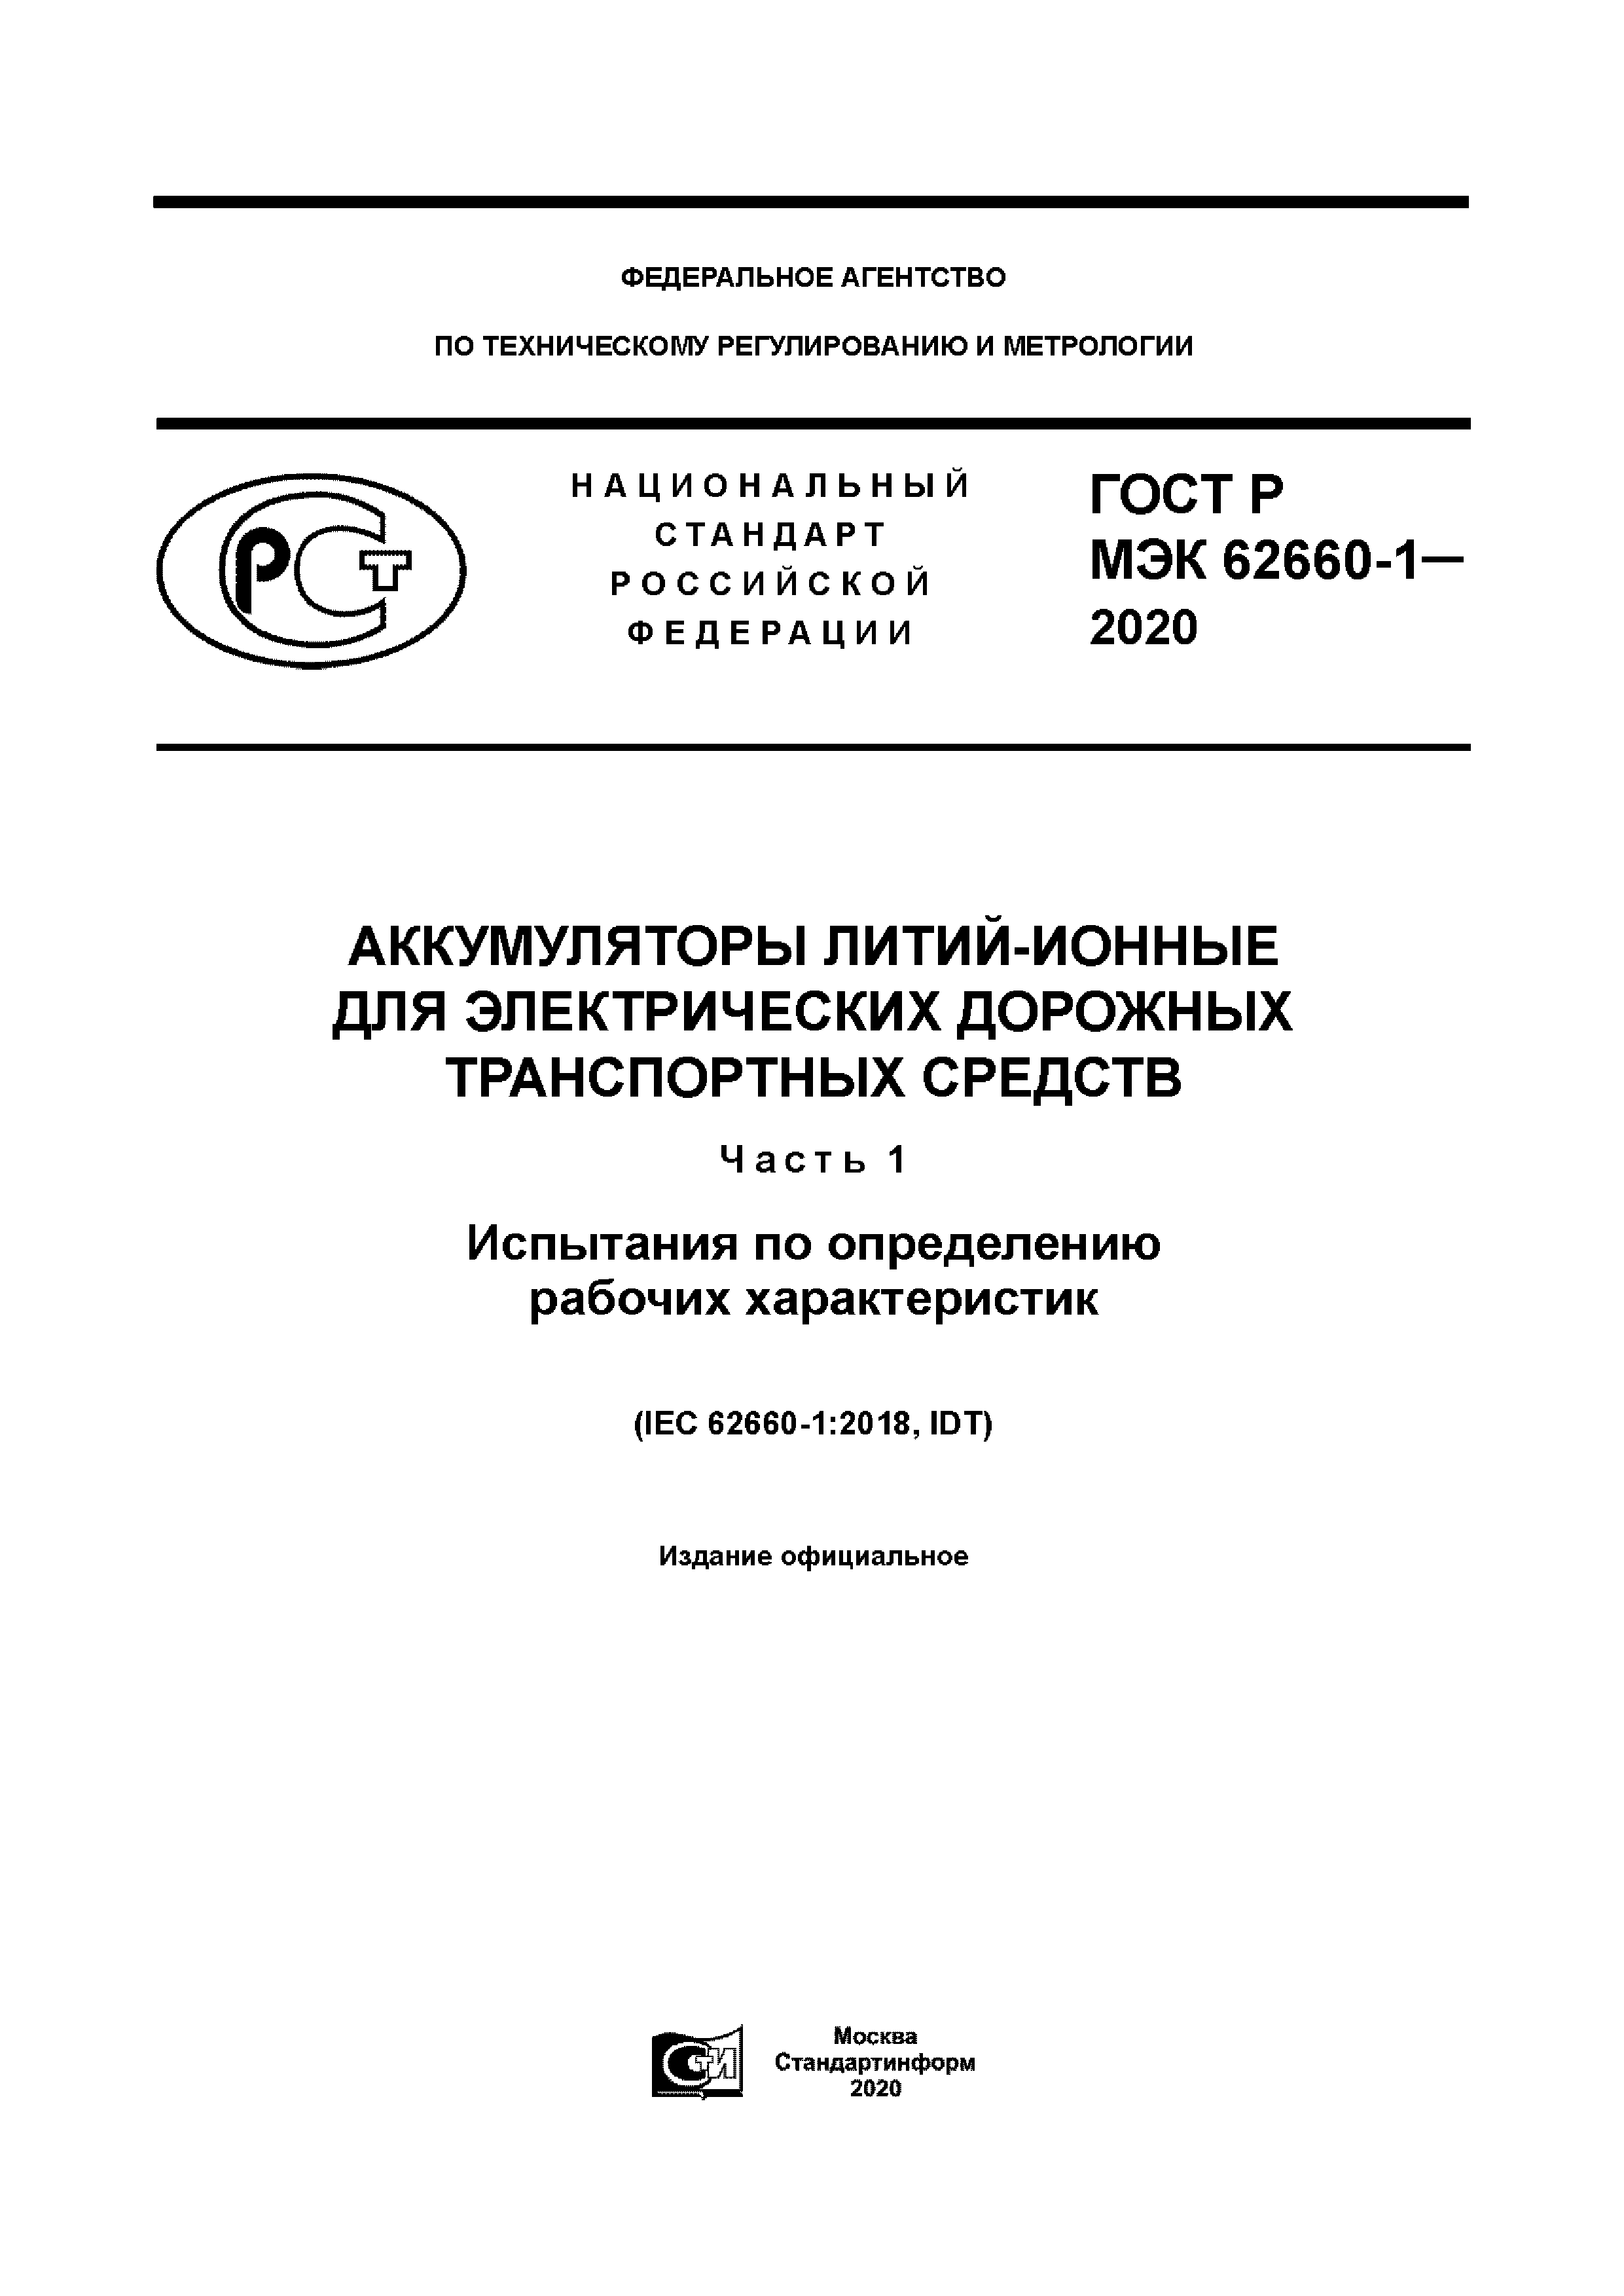 ГОСТ Р МЭК 62660-1-2020